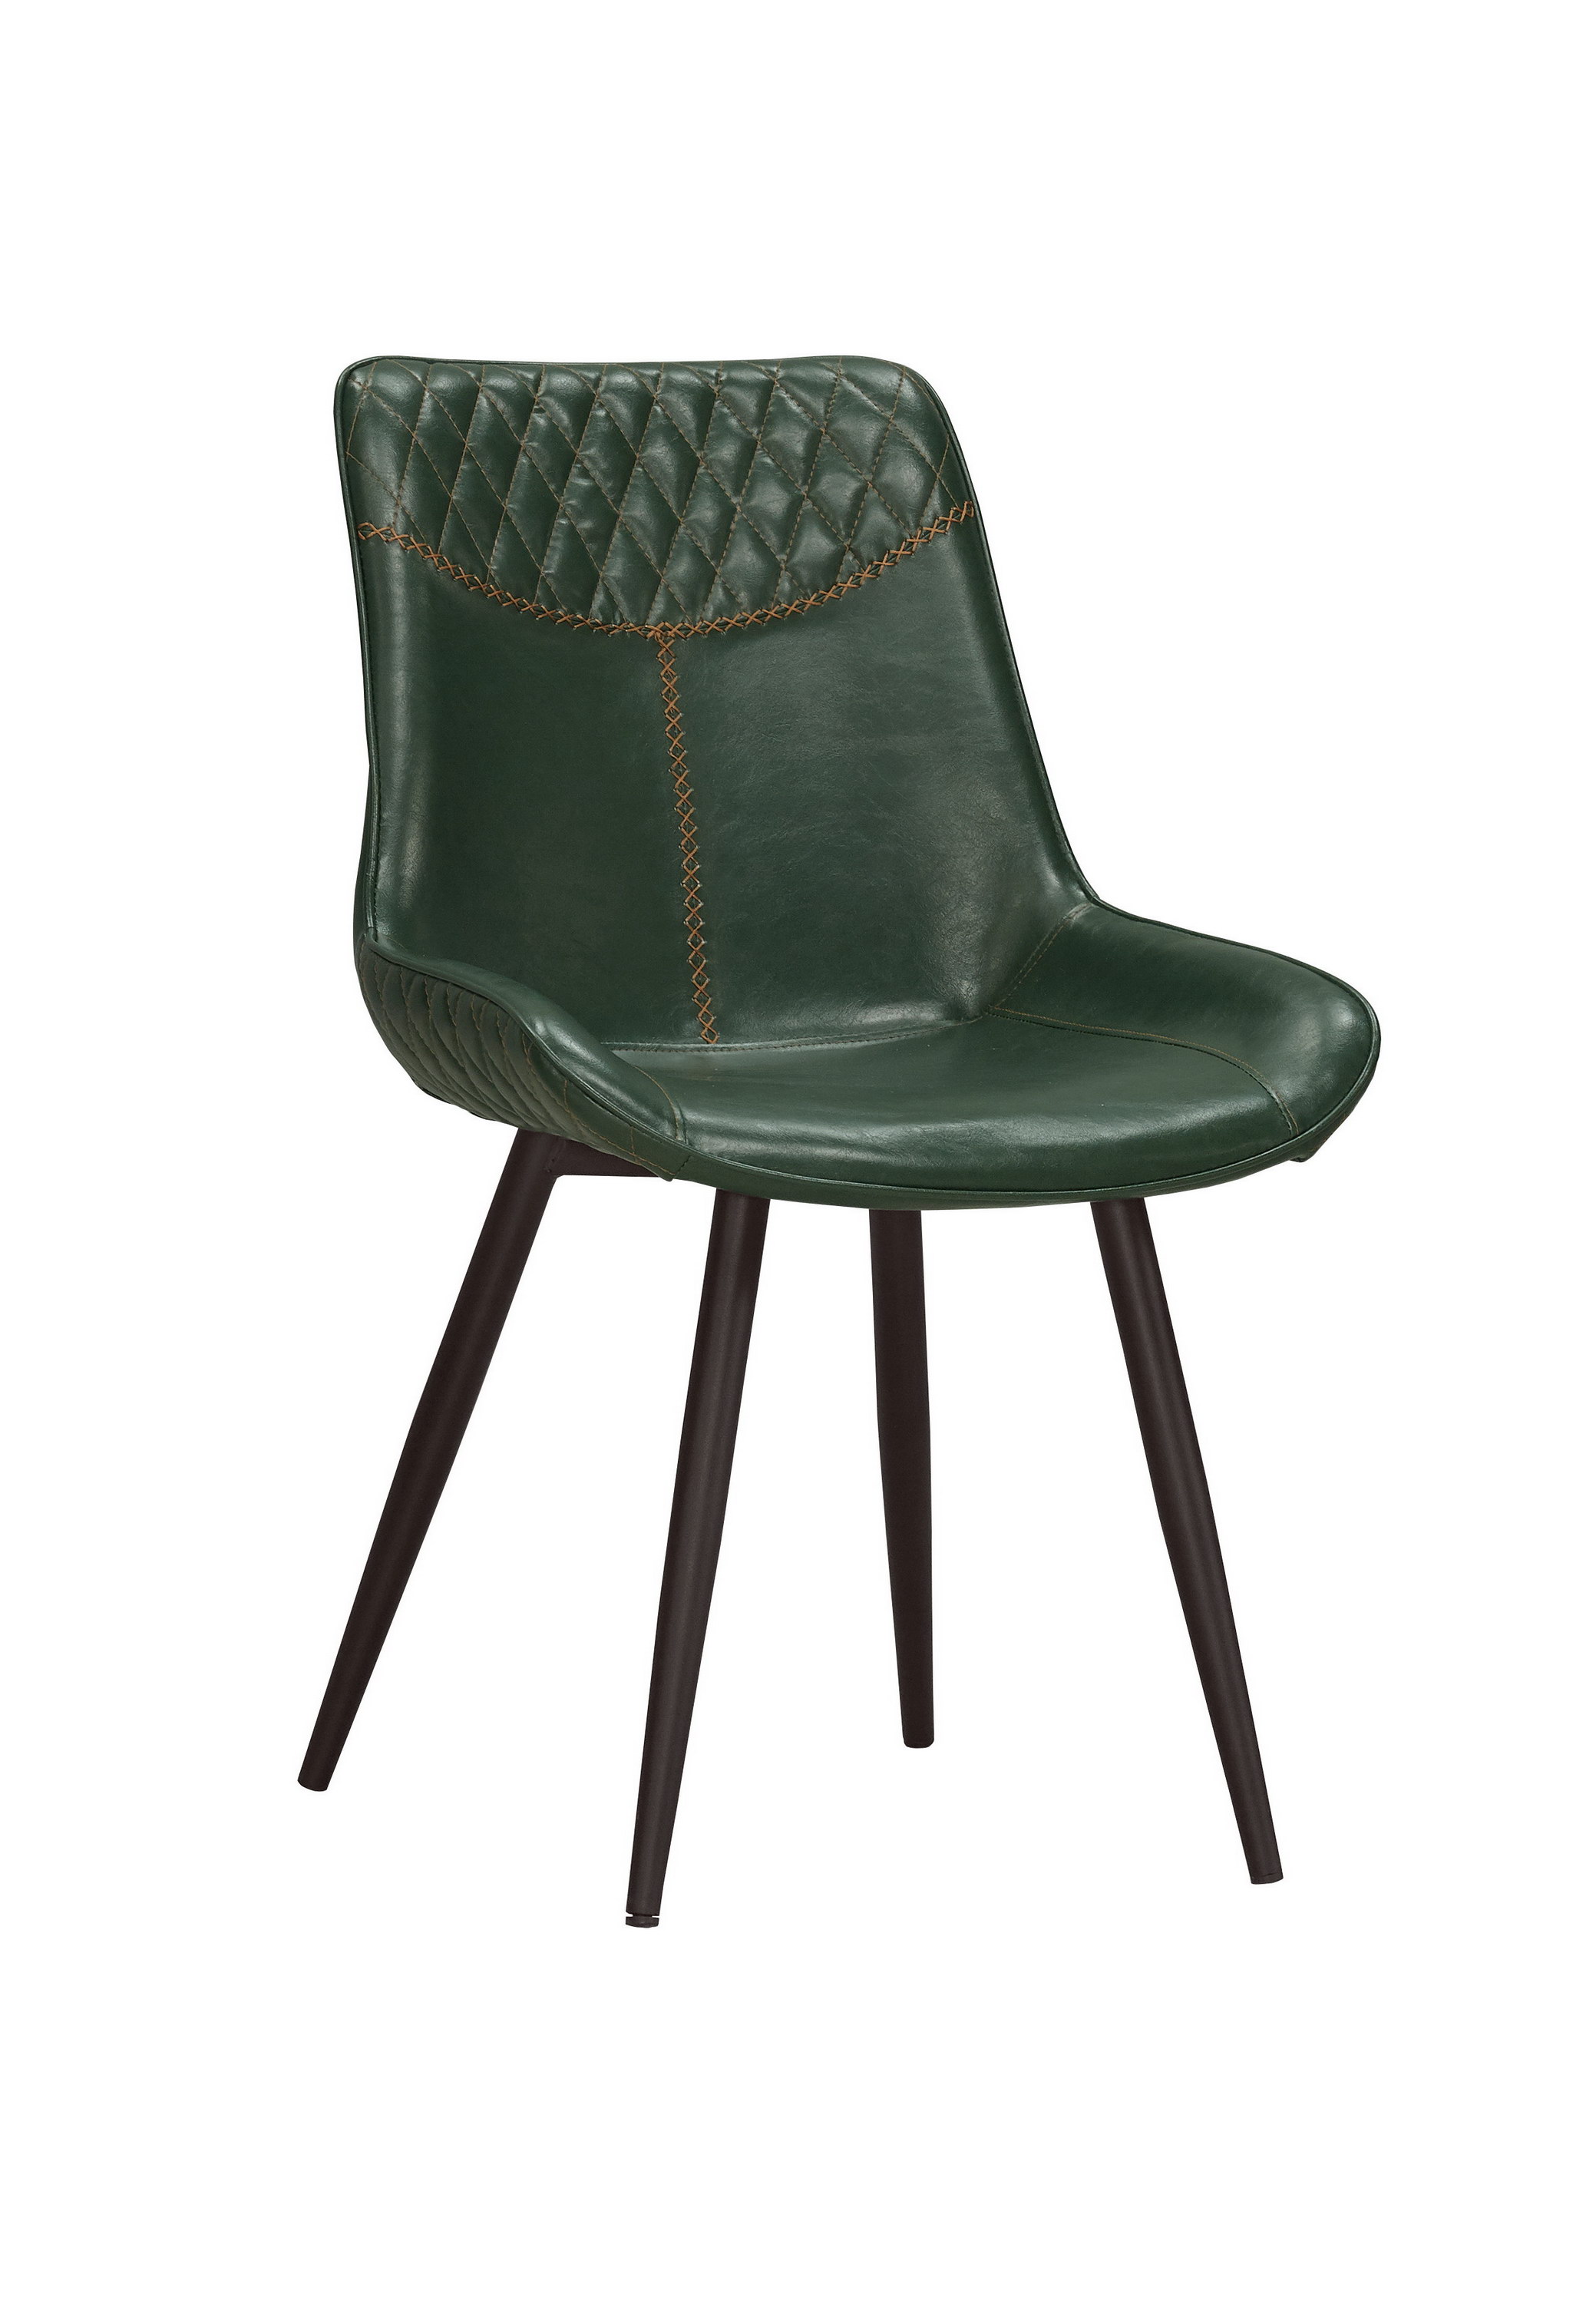 恩布萊餐椅(綠)